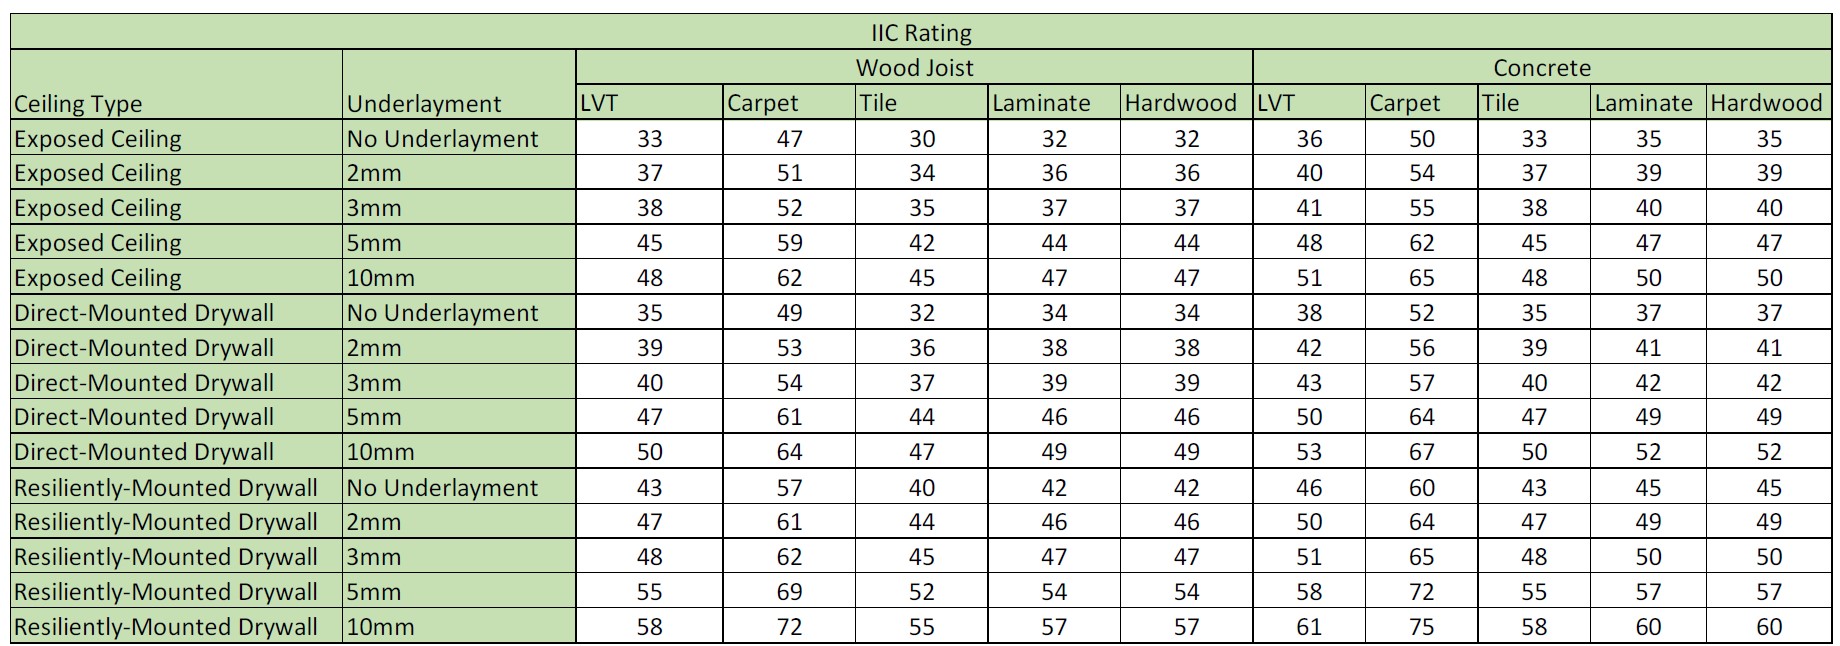 IIC Rating of Cork Flooring Flooring Tips